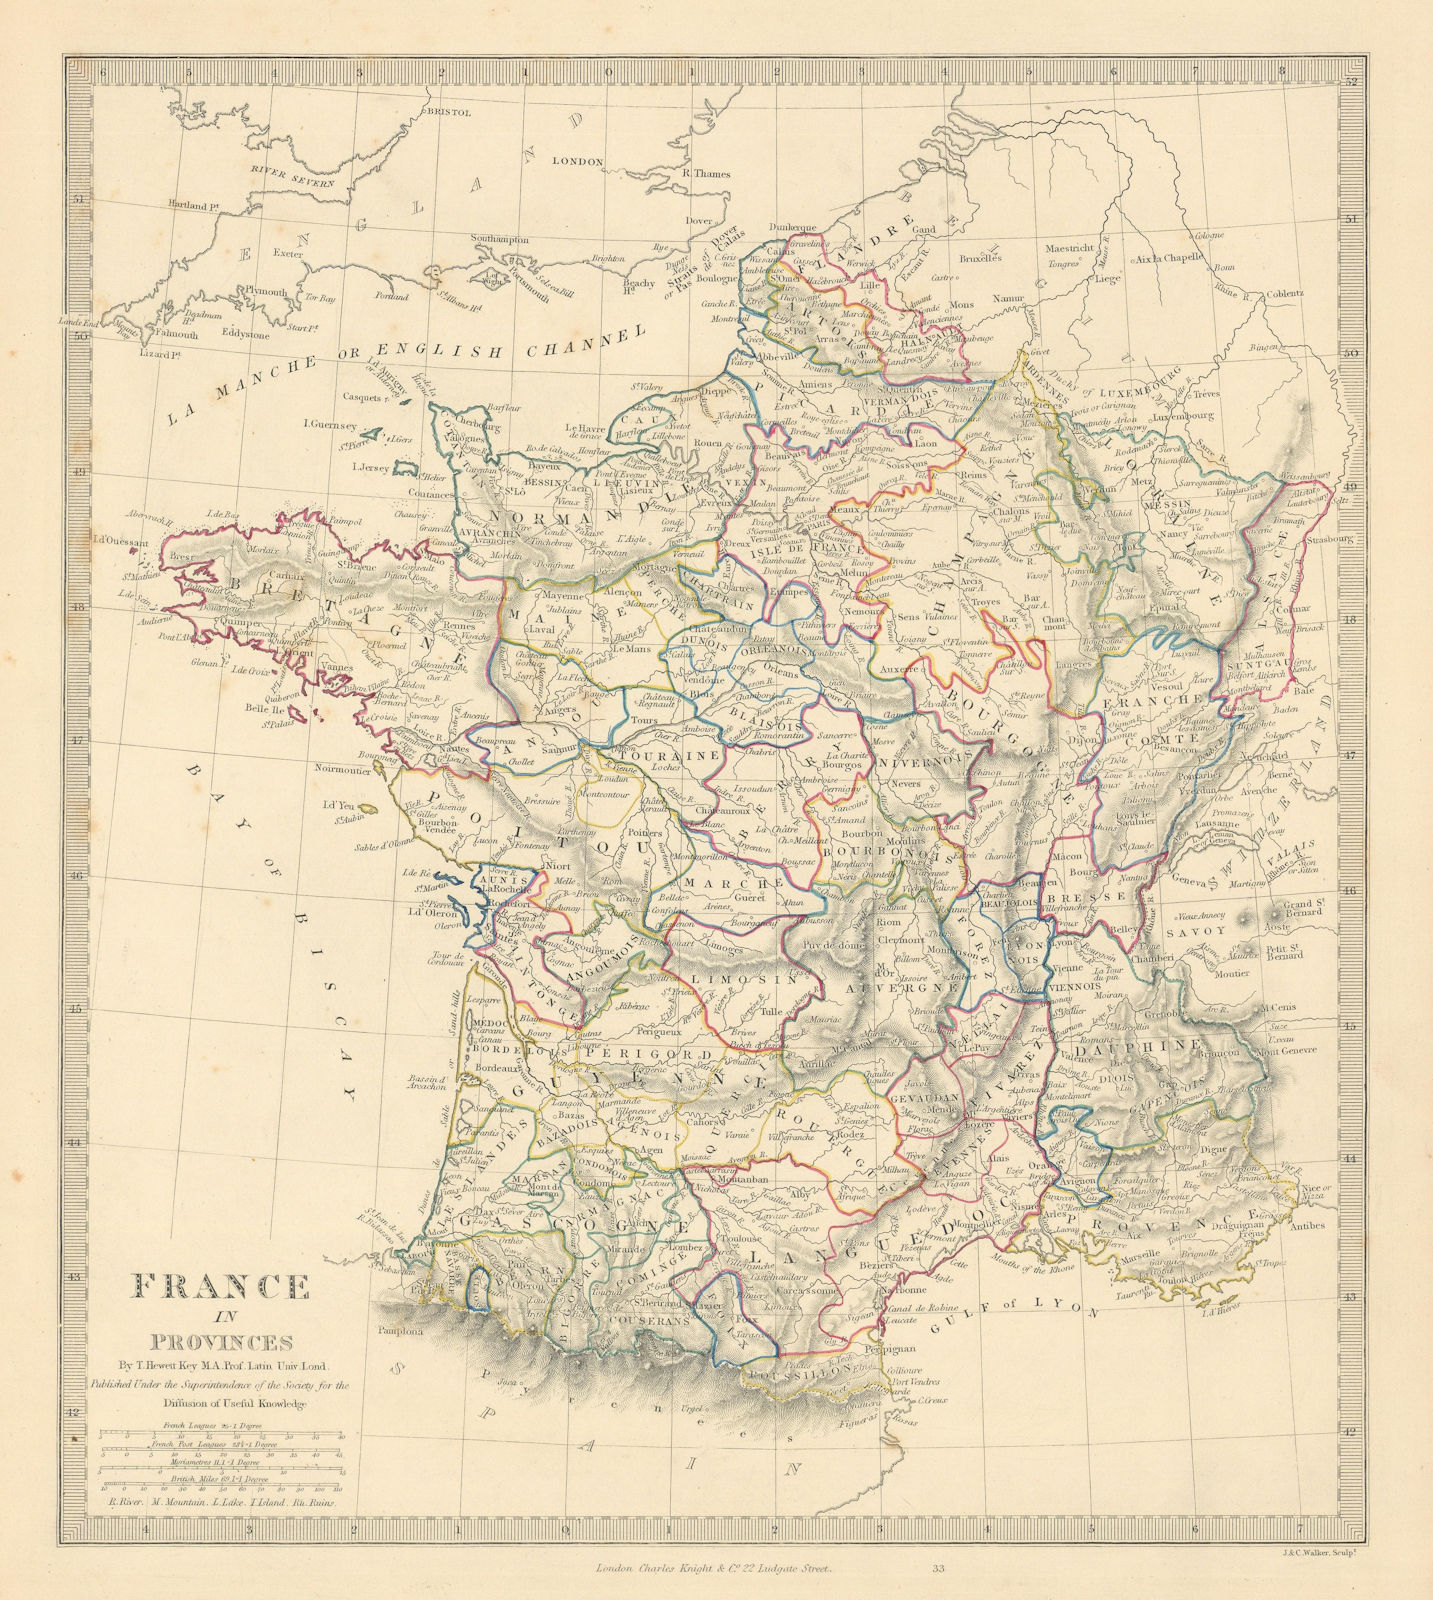 FRANCE IN PROVINCES. Shows provinces <1790. Original hand colour. SDUK 1845 map